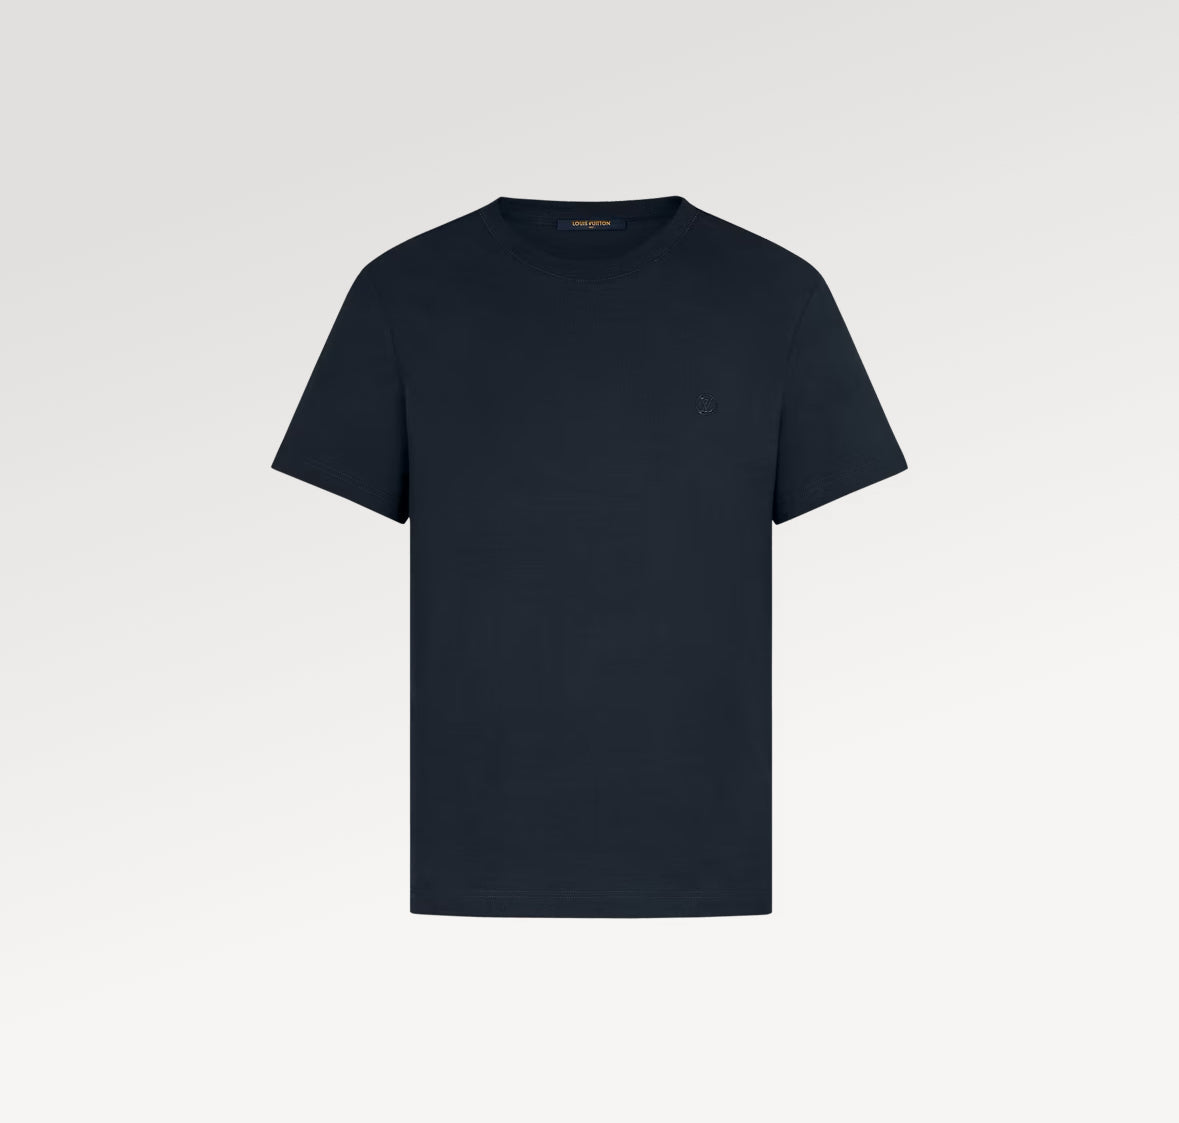 Louis Vuitton Classic Cotton T-Shirt “Corbeau”